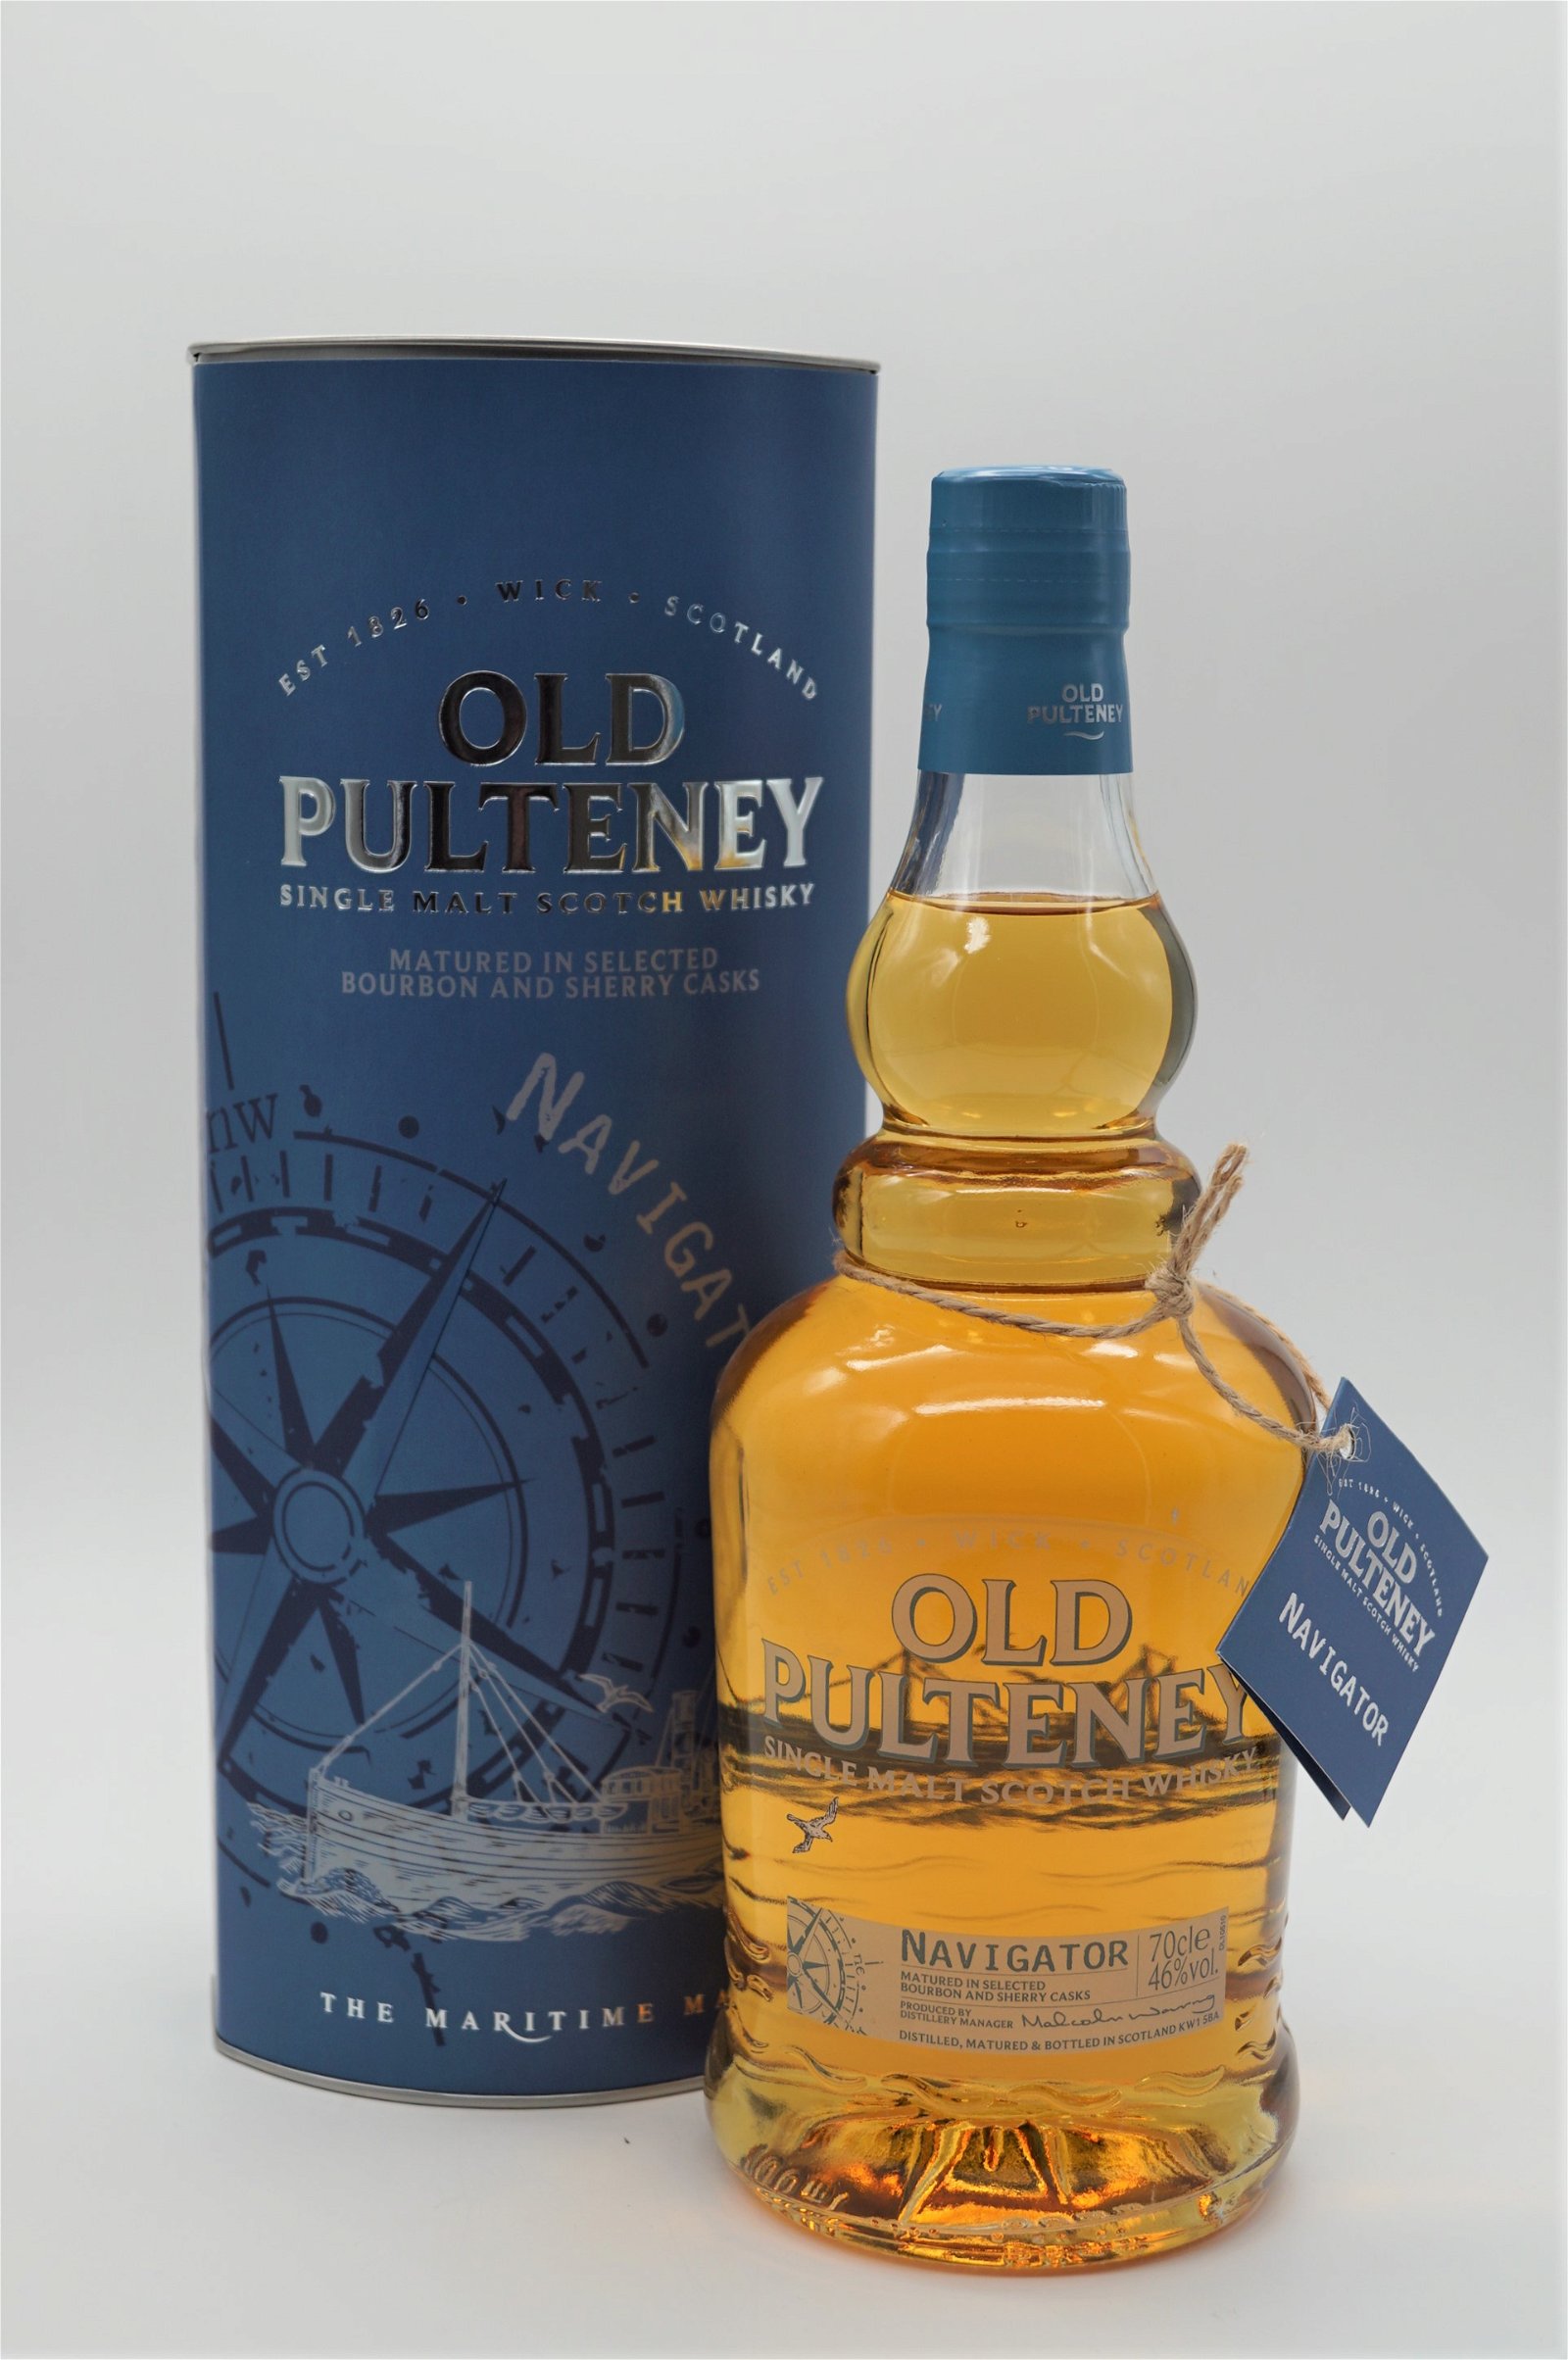 Old Pulteney Navigator Bourbon and Sherry Cask Single Malt Scotch Whisky